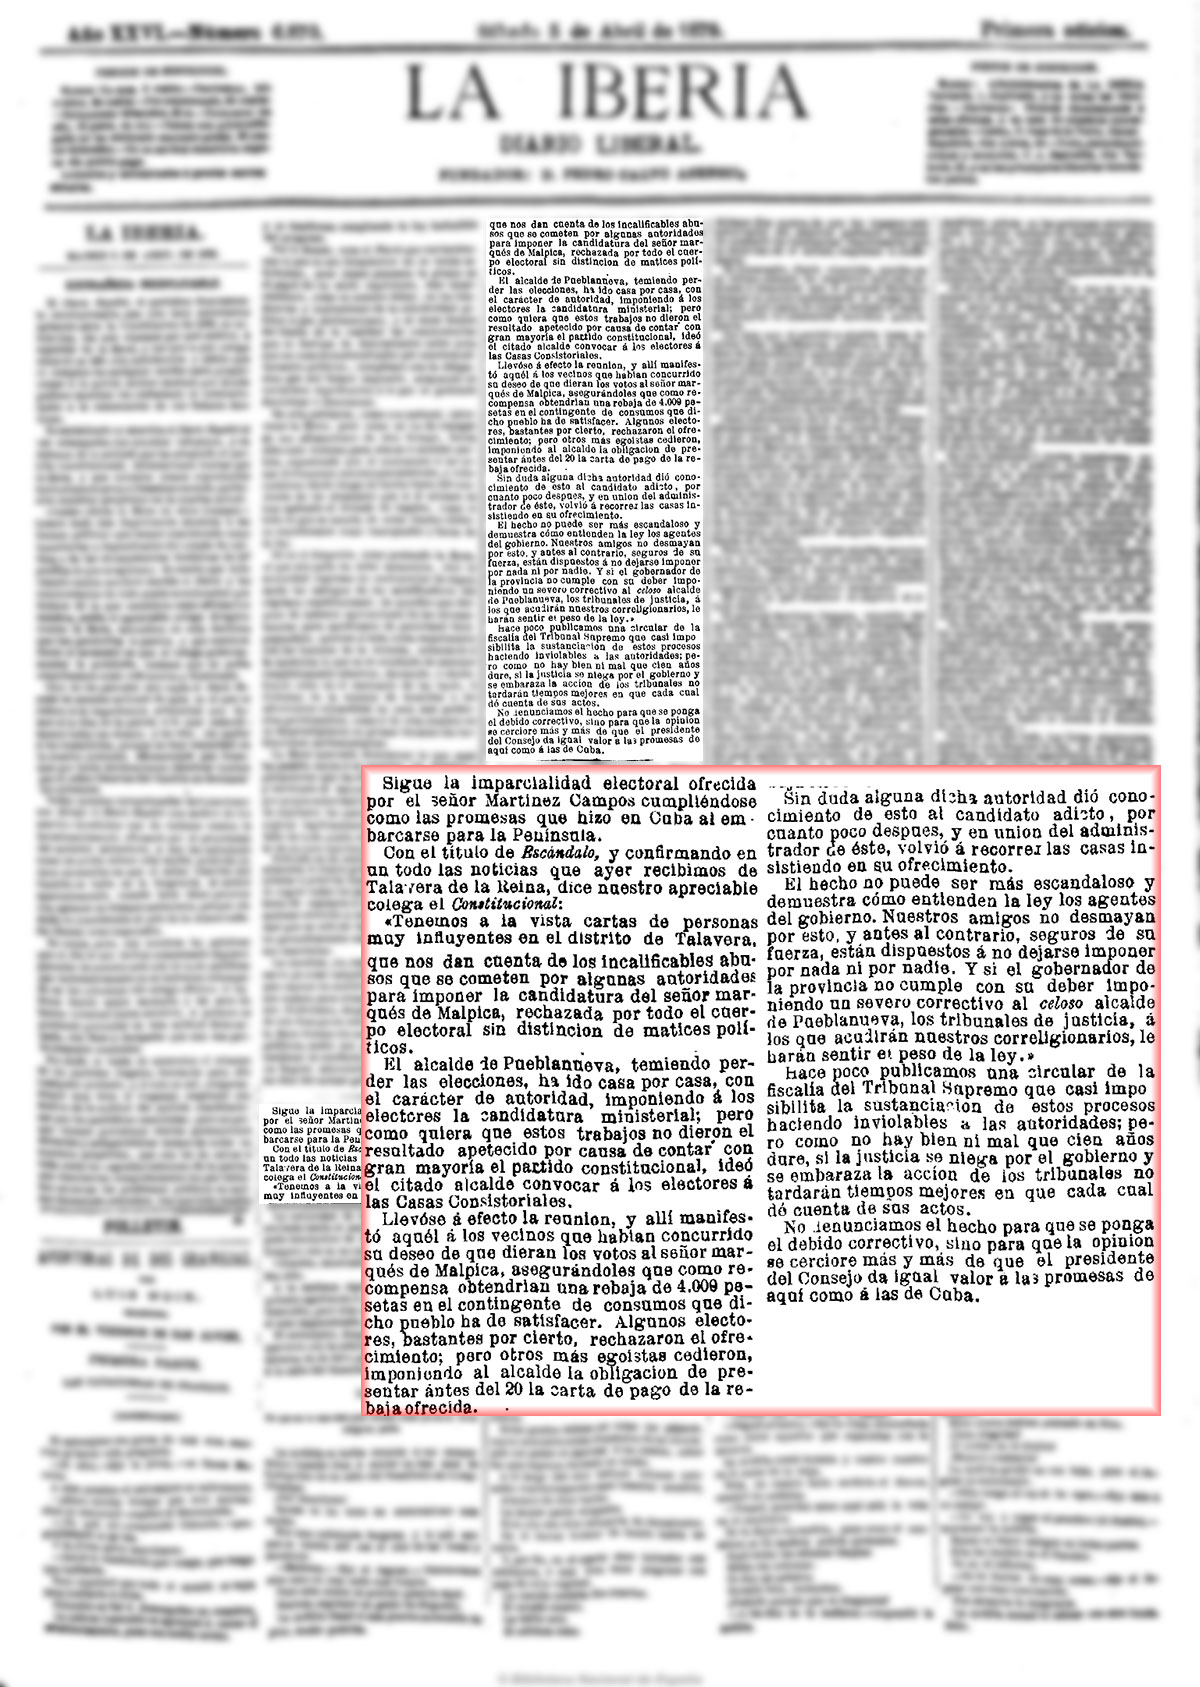 La Iberia 5/4/1879, página 1. Caciquismo en acción